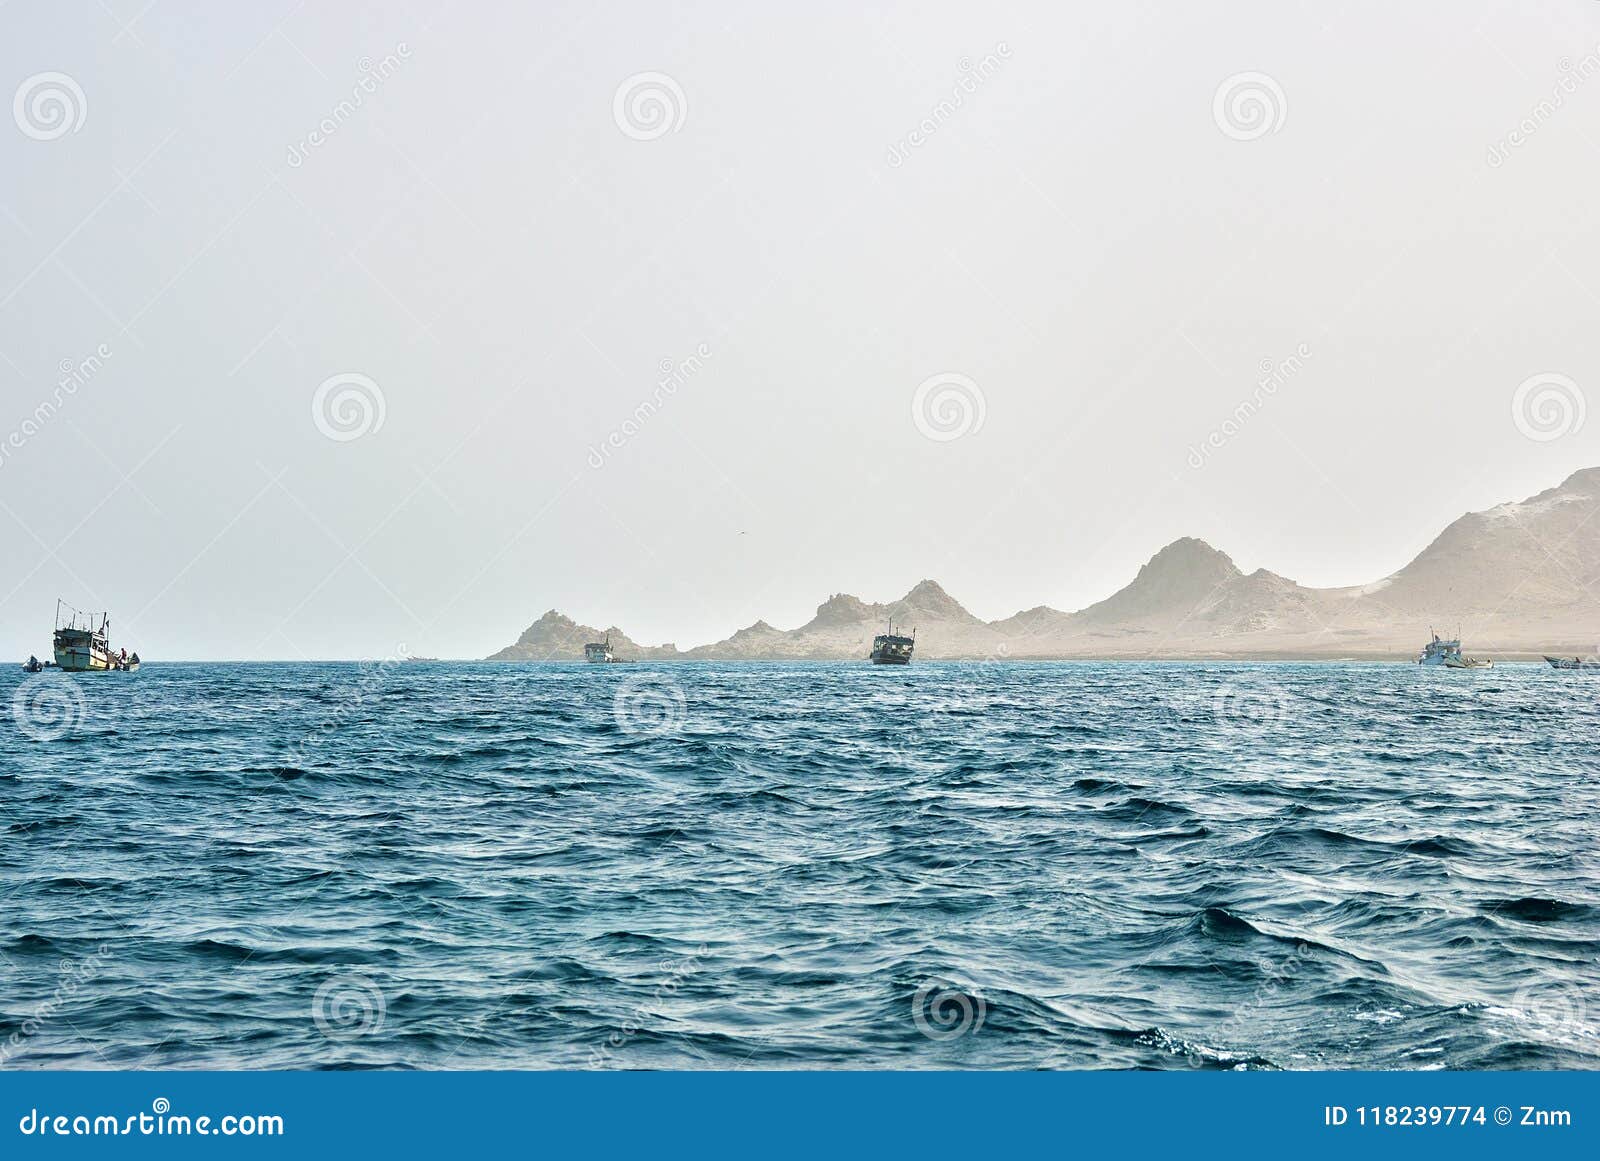 gulf of aden, arabian sea, yemen